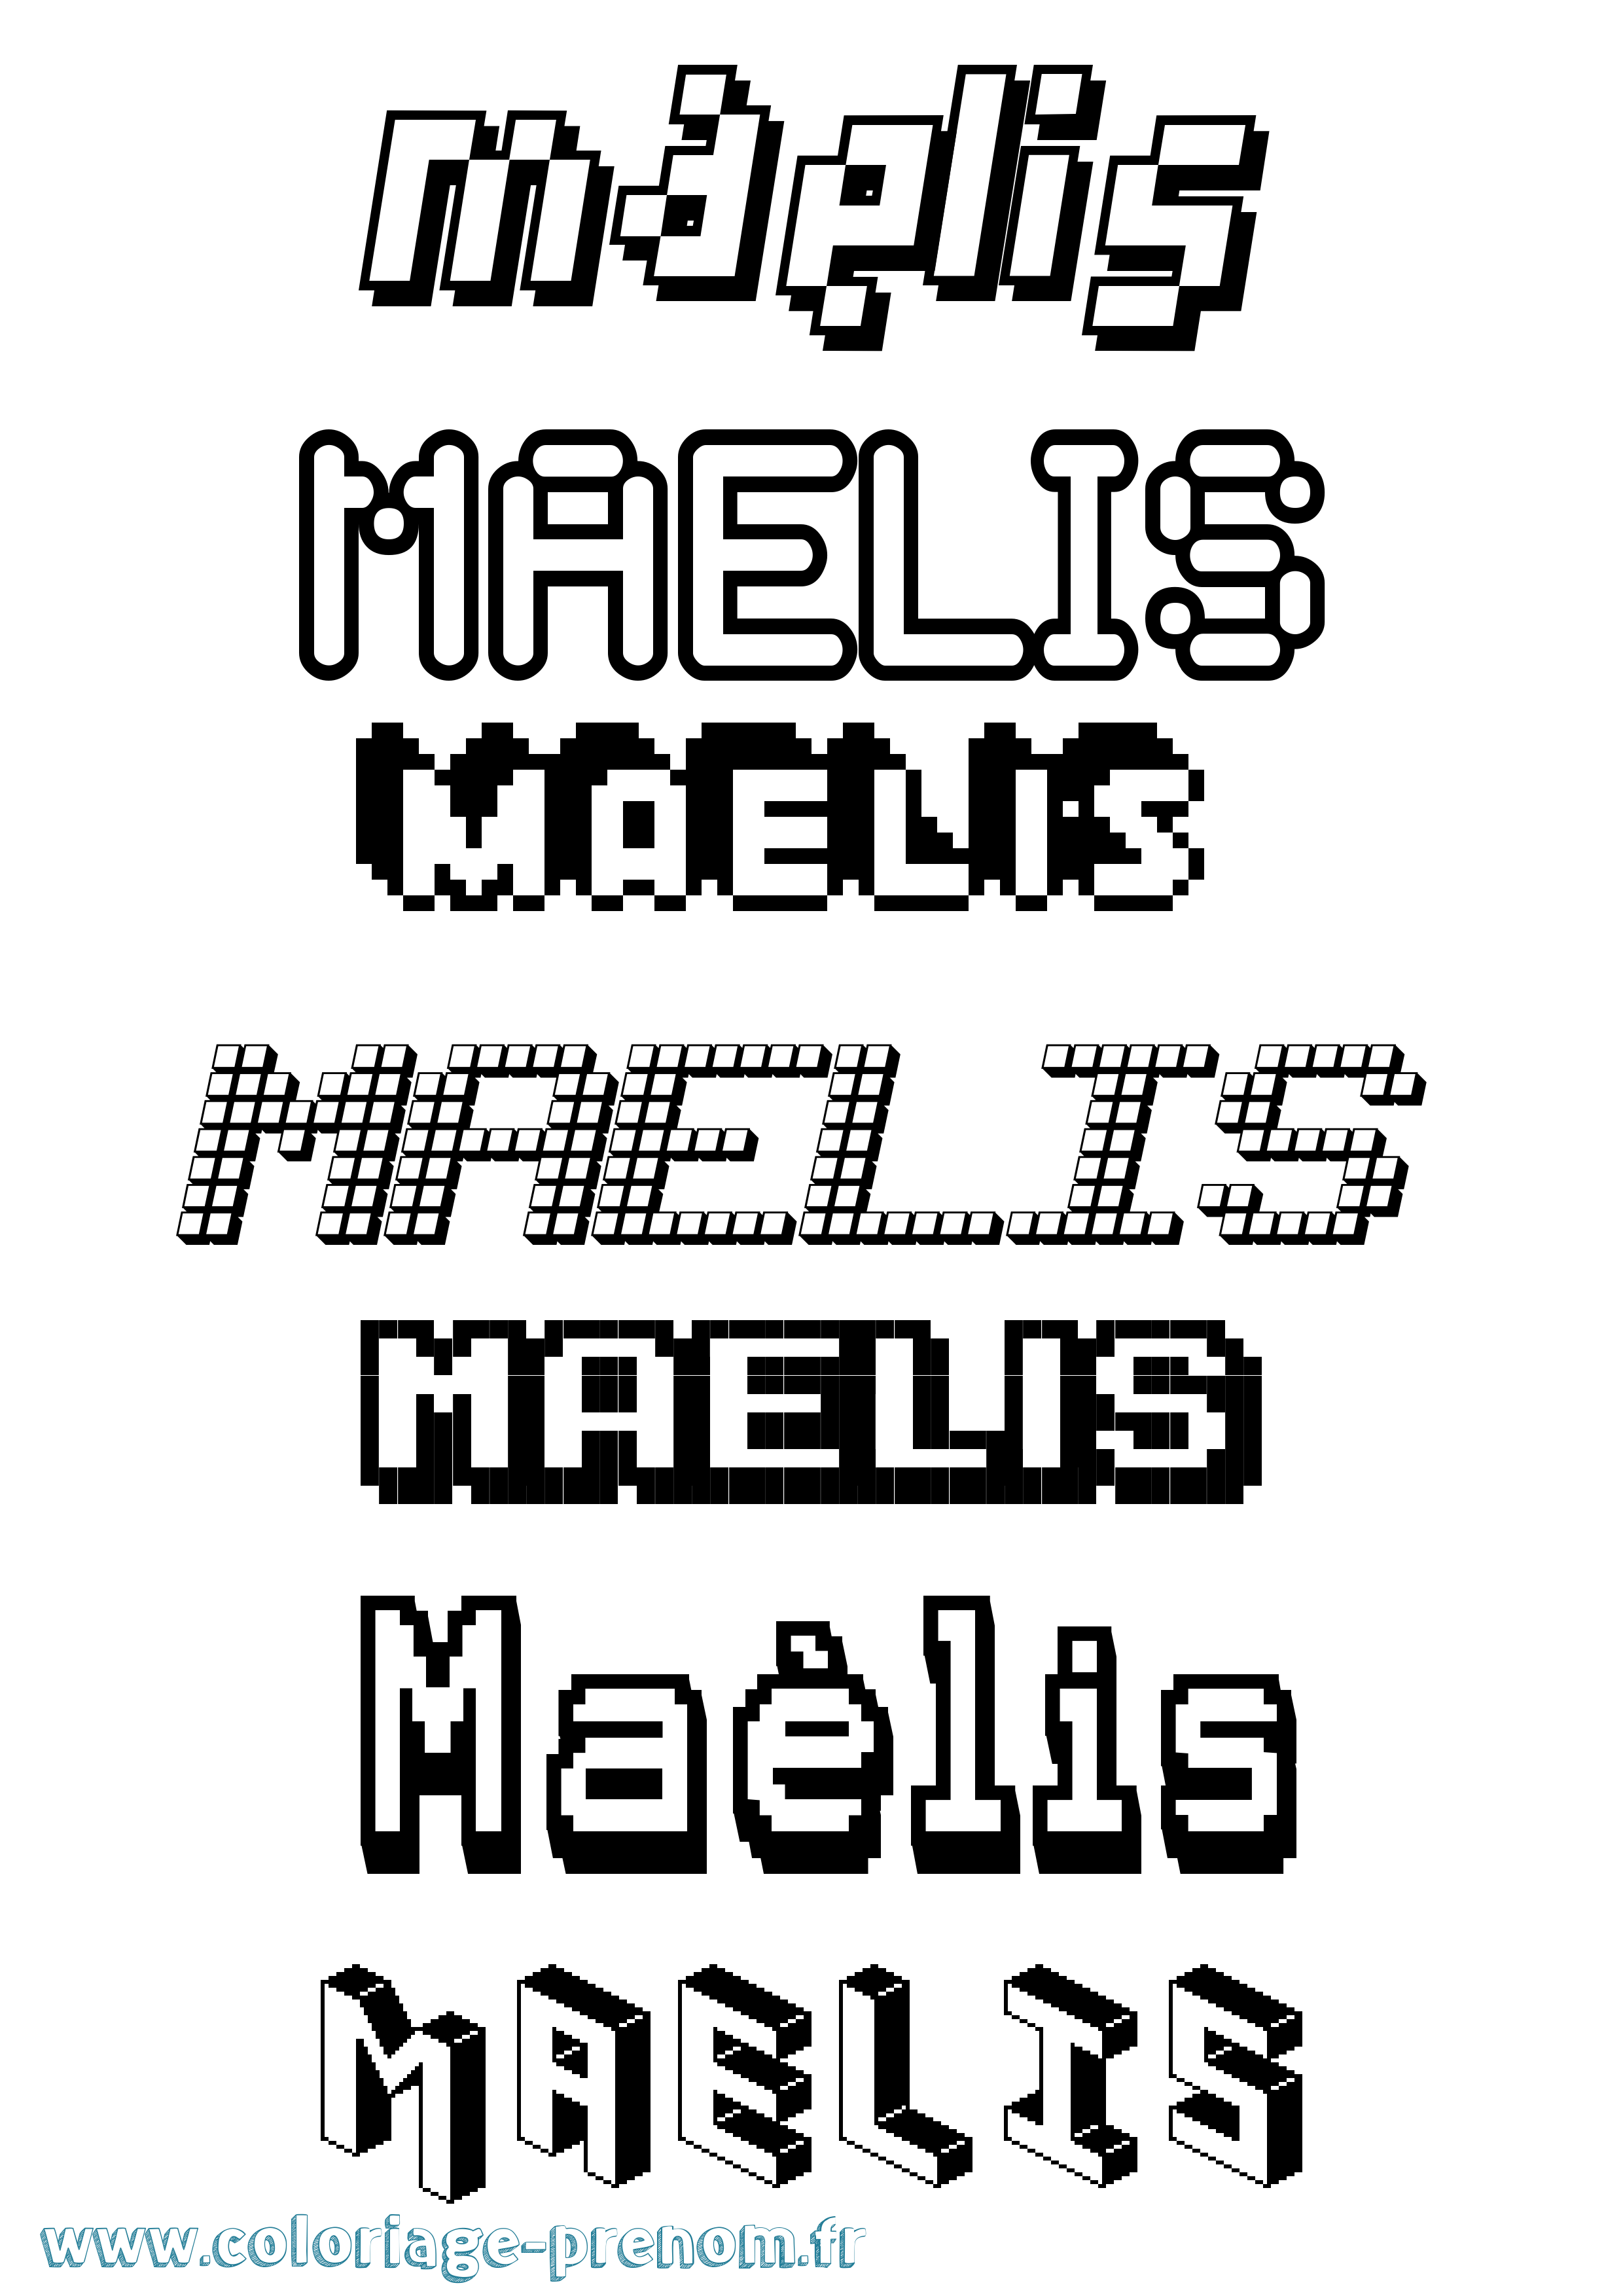 Coloriage prénom Maélis Pixel